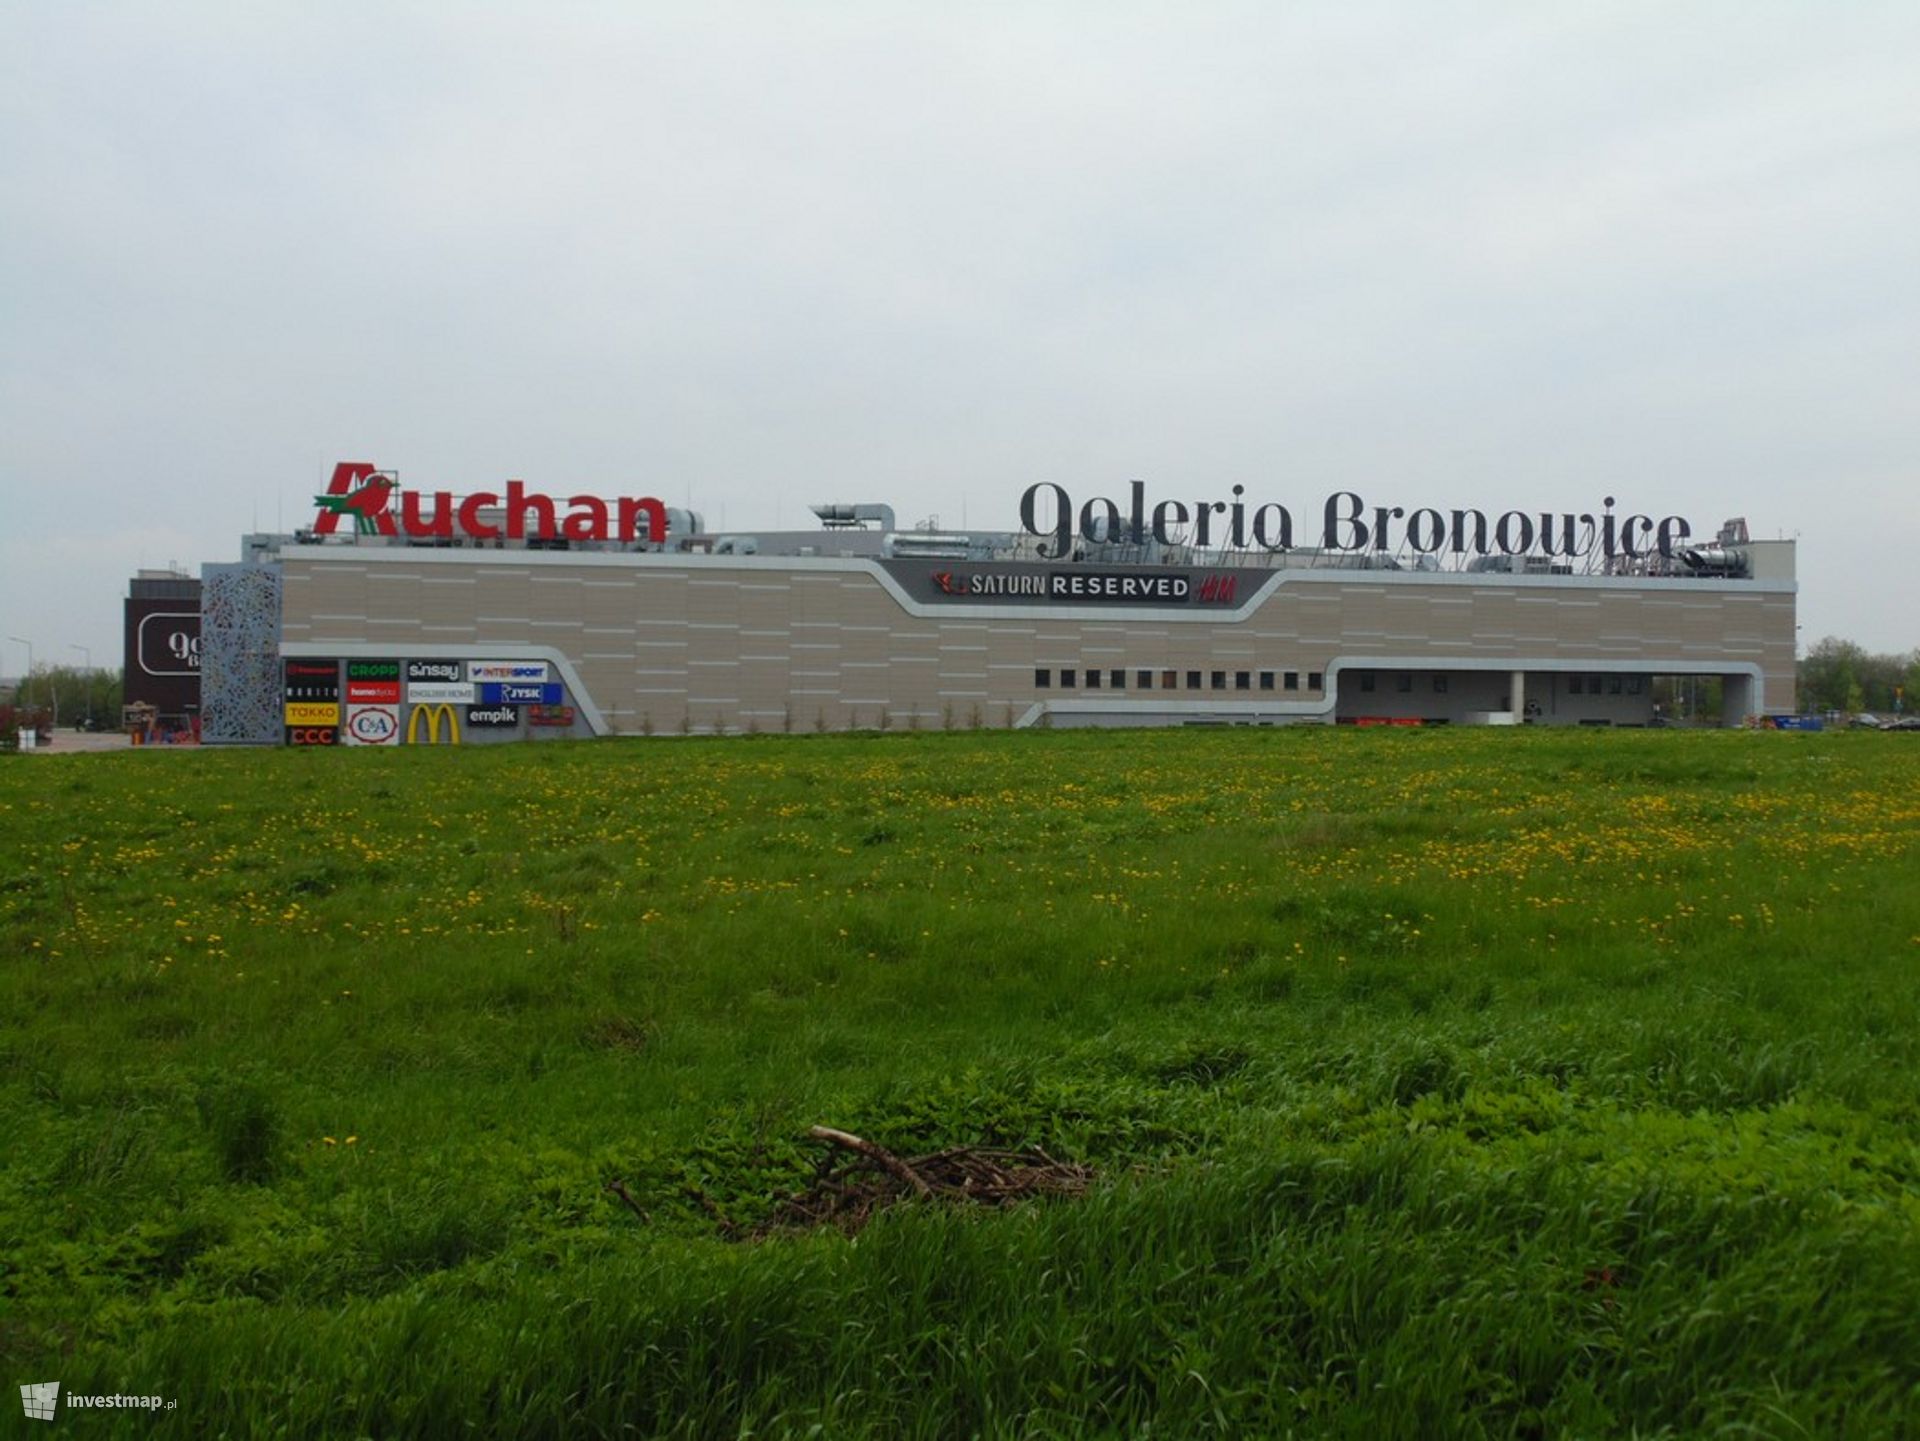 W Krakowie może powstać nowy park. Auchan zamierza sprzedać działki przy Galerii Bronowice